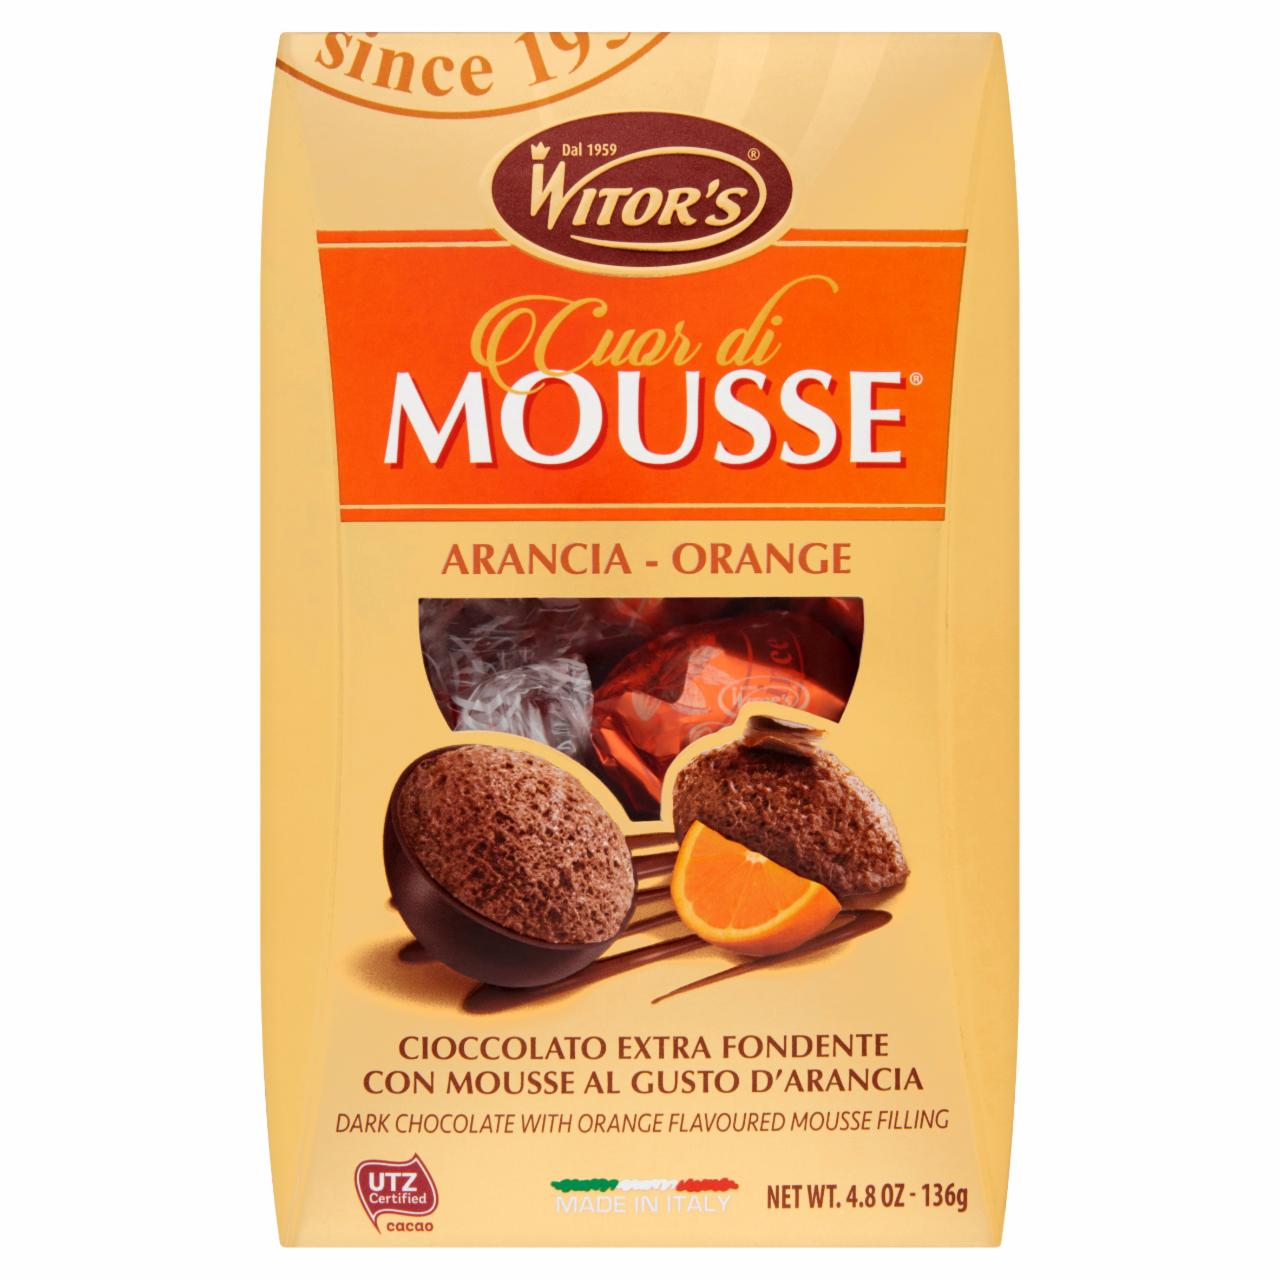 Képek - Witor's Cuor di Mousse étcsokoládé praliné narancs ízű csokoládéhab töltelékkel 136 g